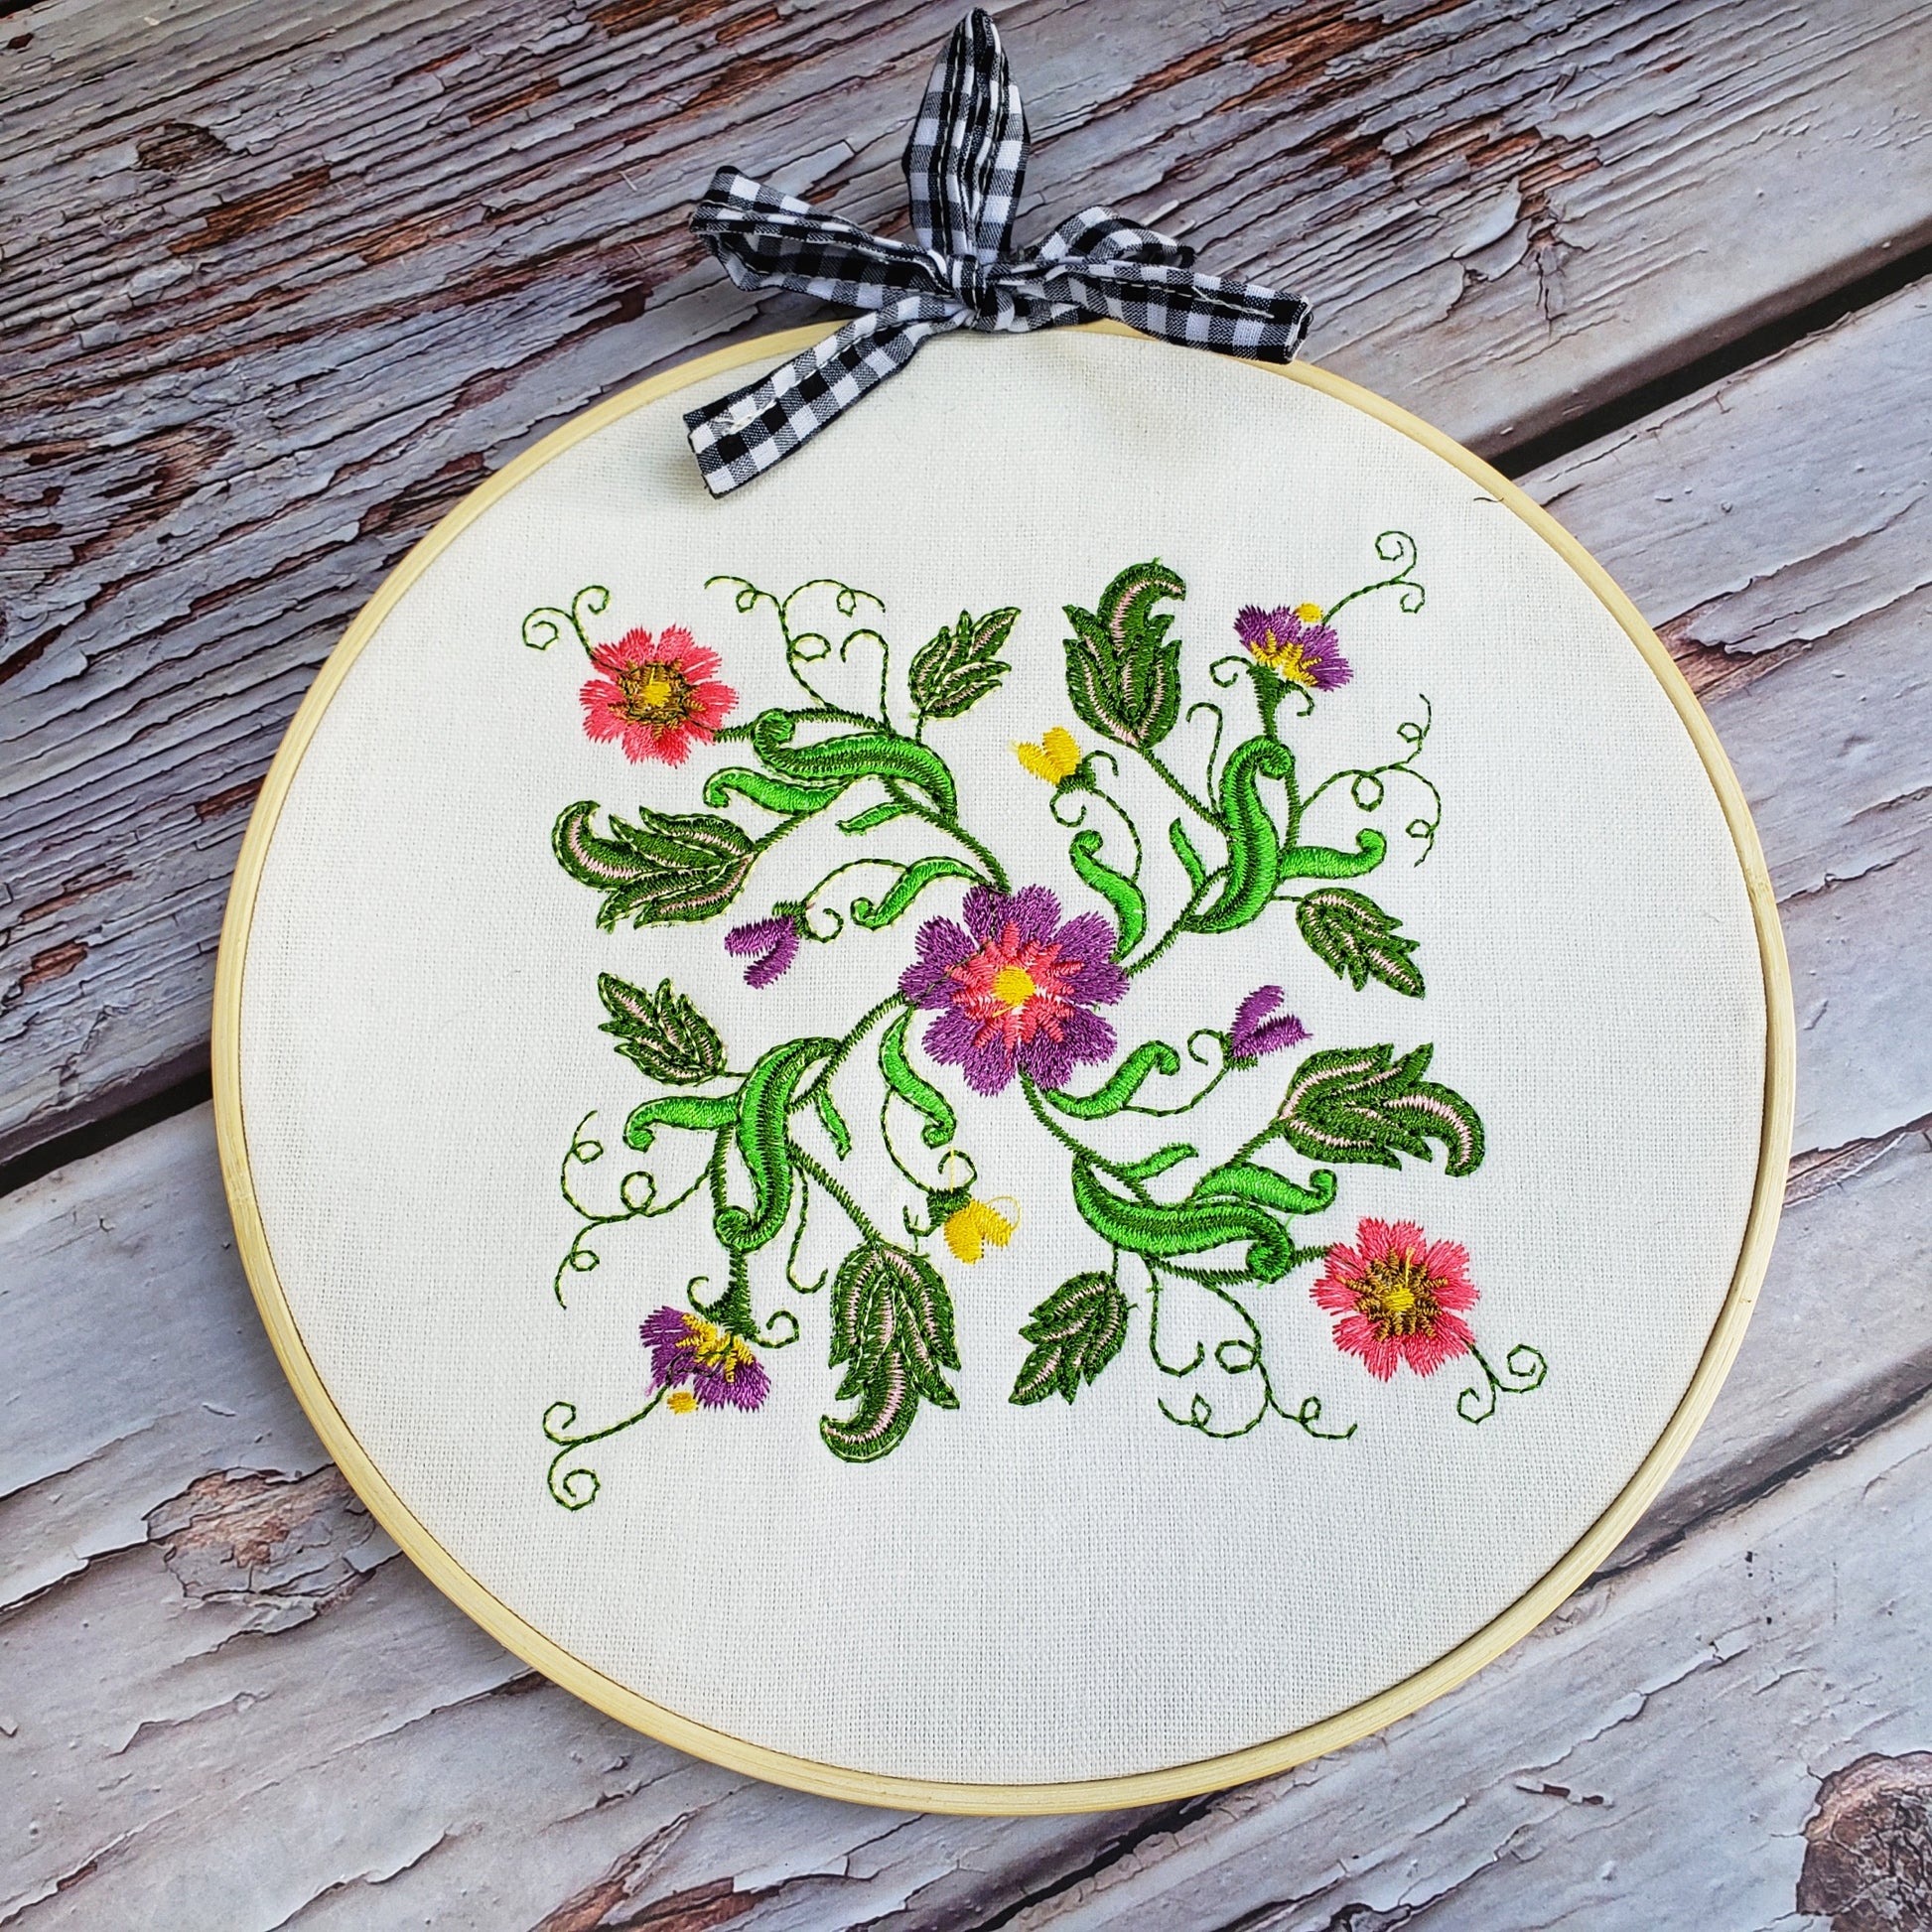 Hoop flowers embroidery